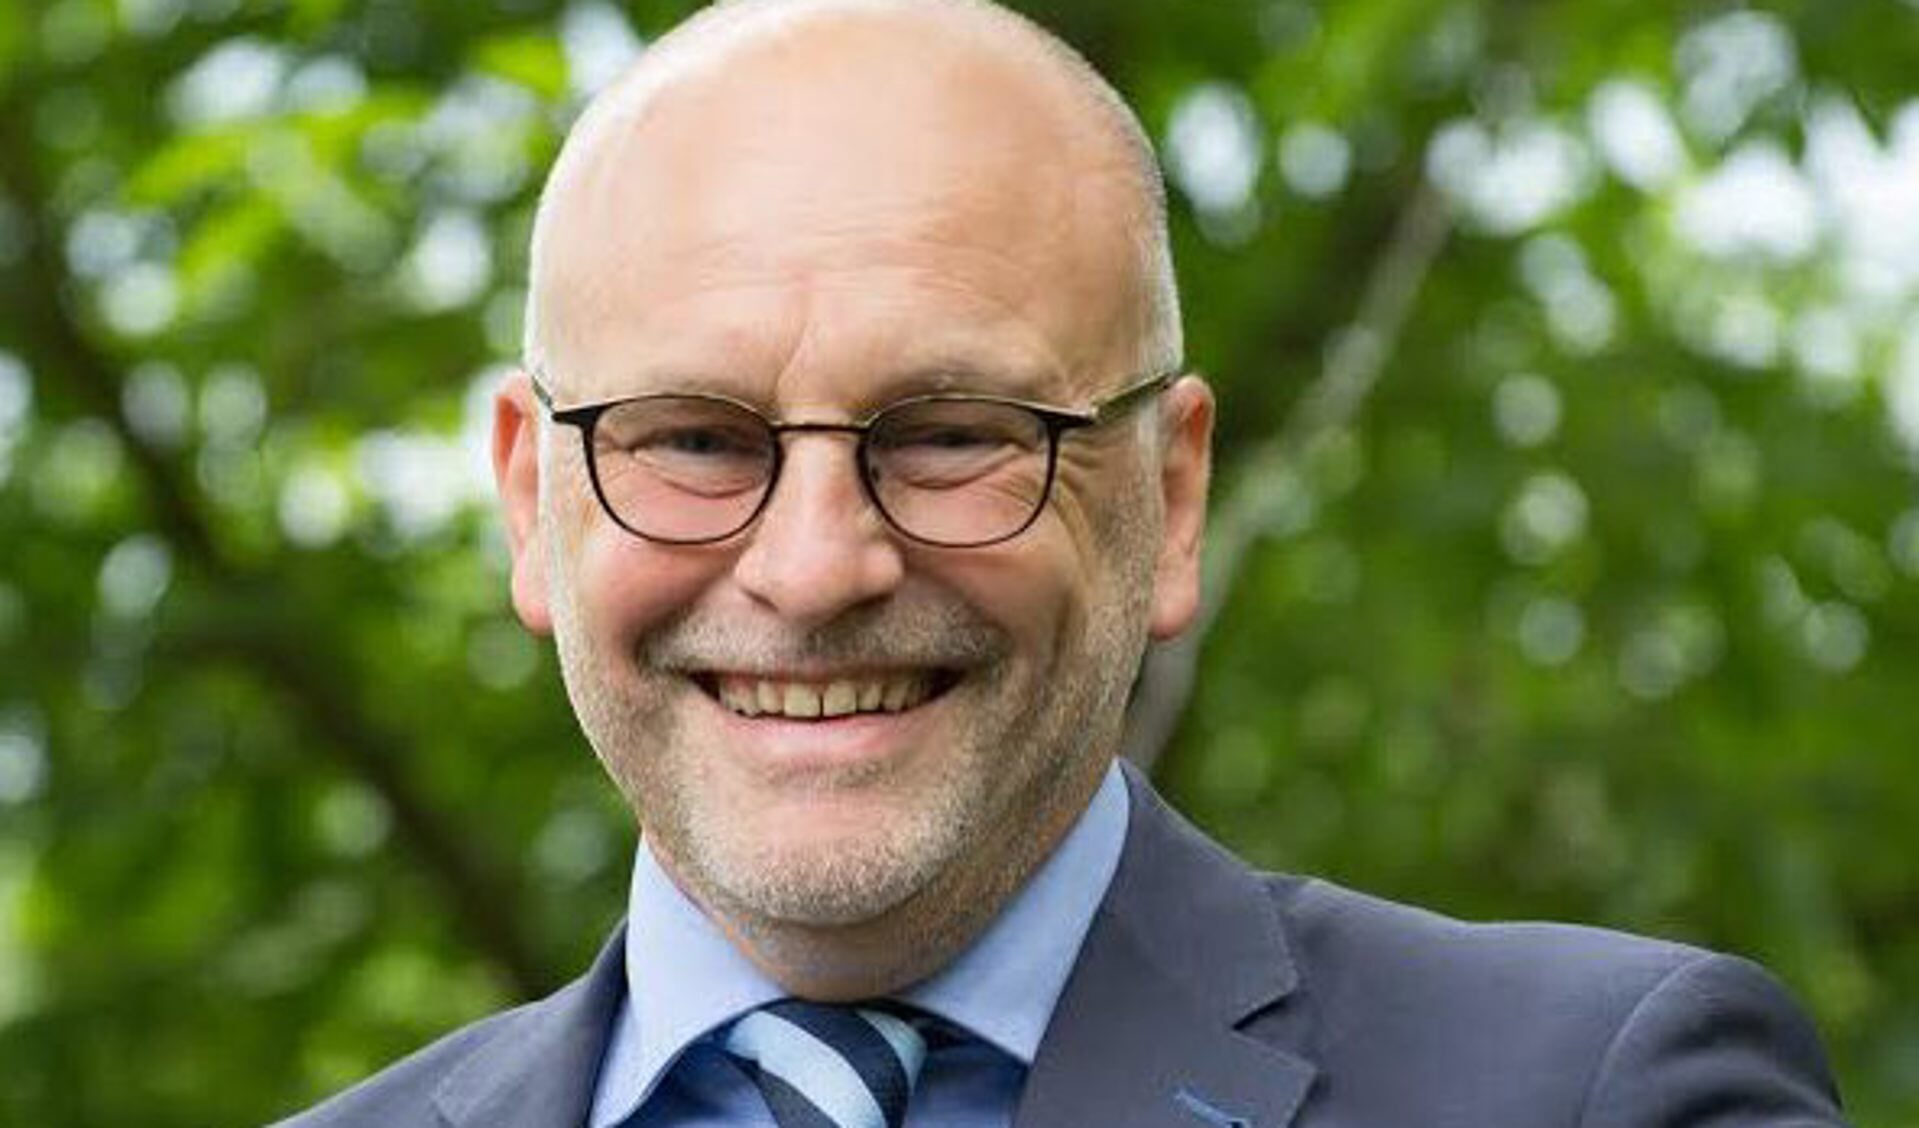 Wethouder Jan Mollen was recent nog optimistisch over de begroting van de gemeente Halderberge. 